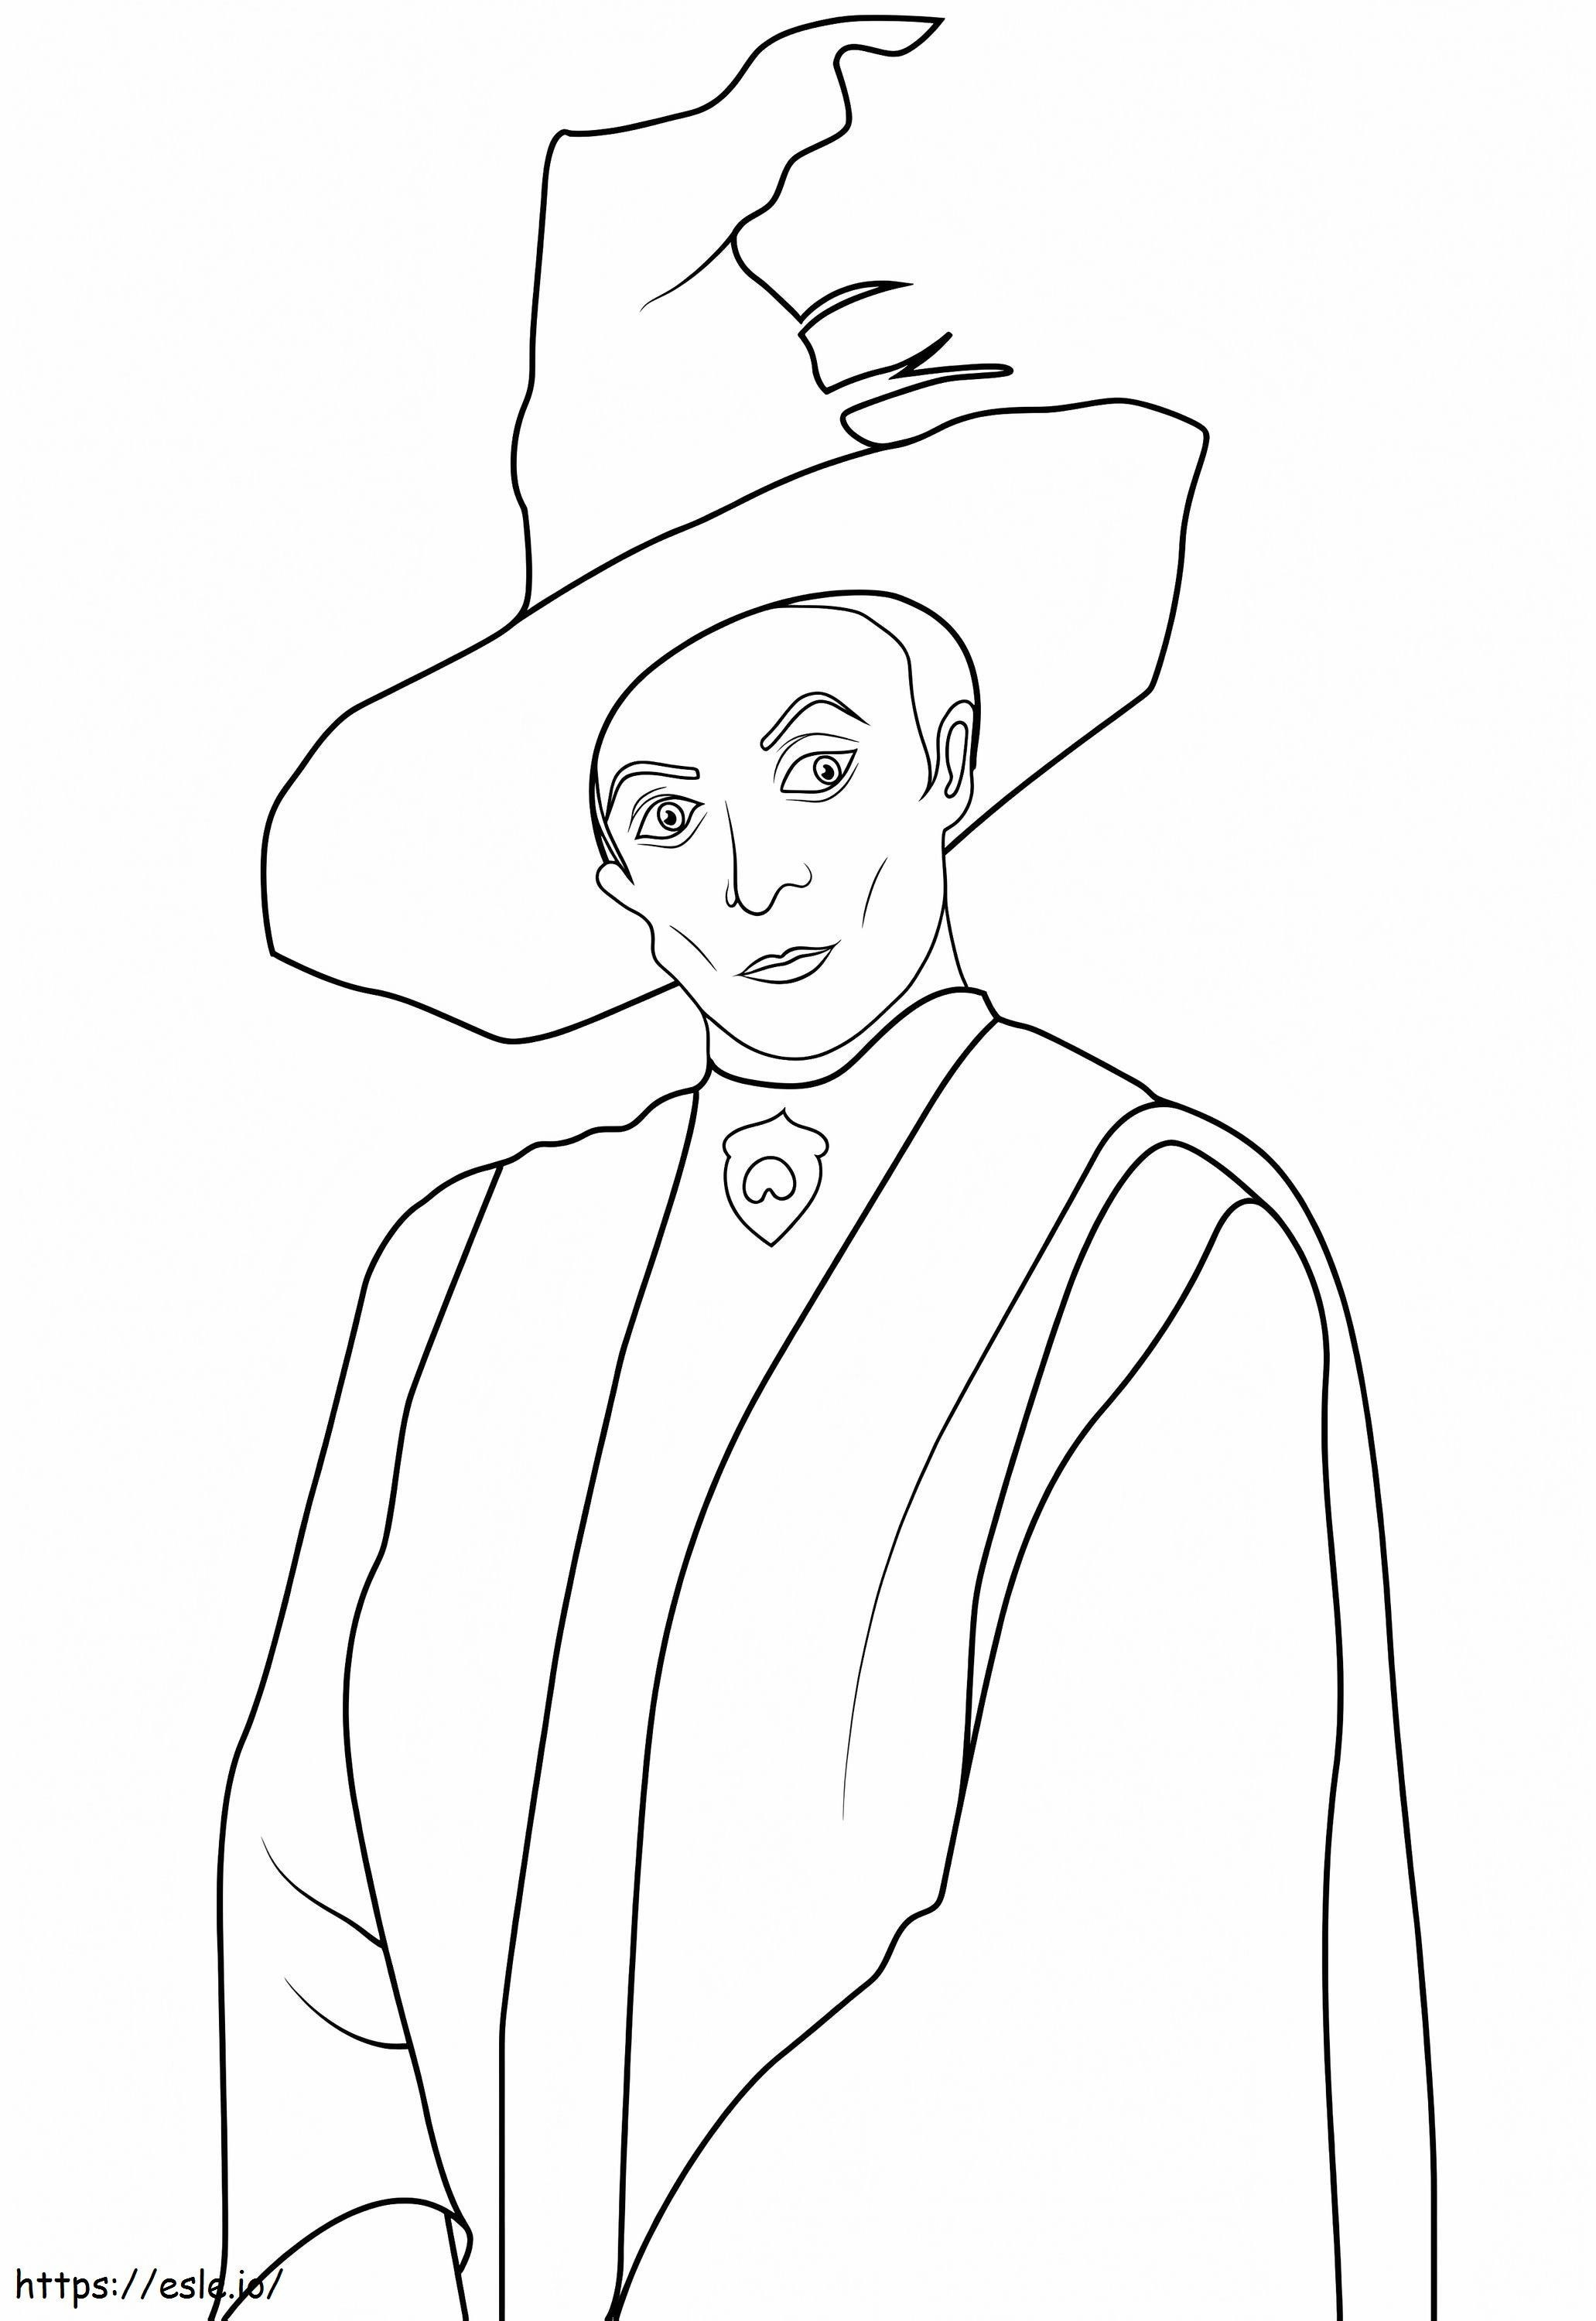 Minerva McGonagall de Harry Potter para colorear